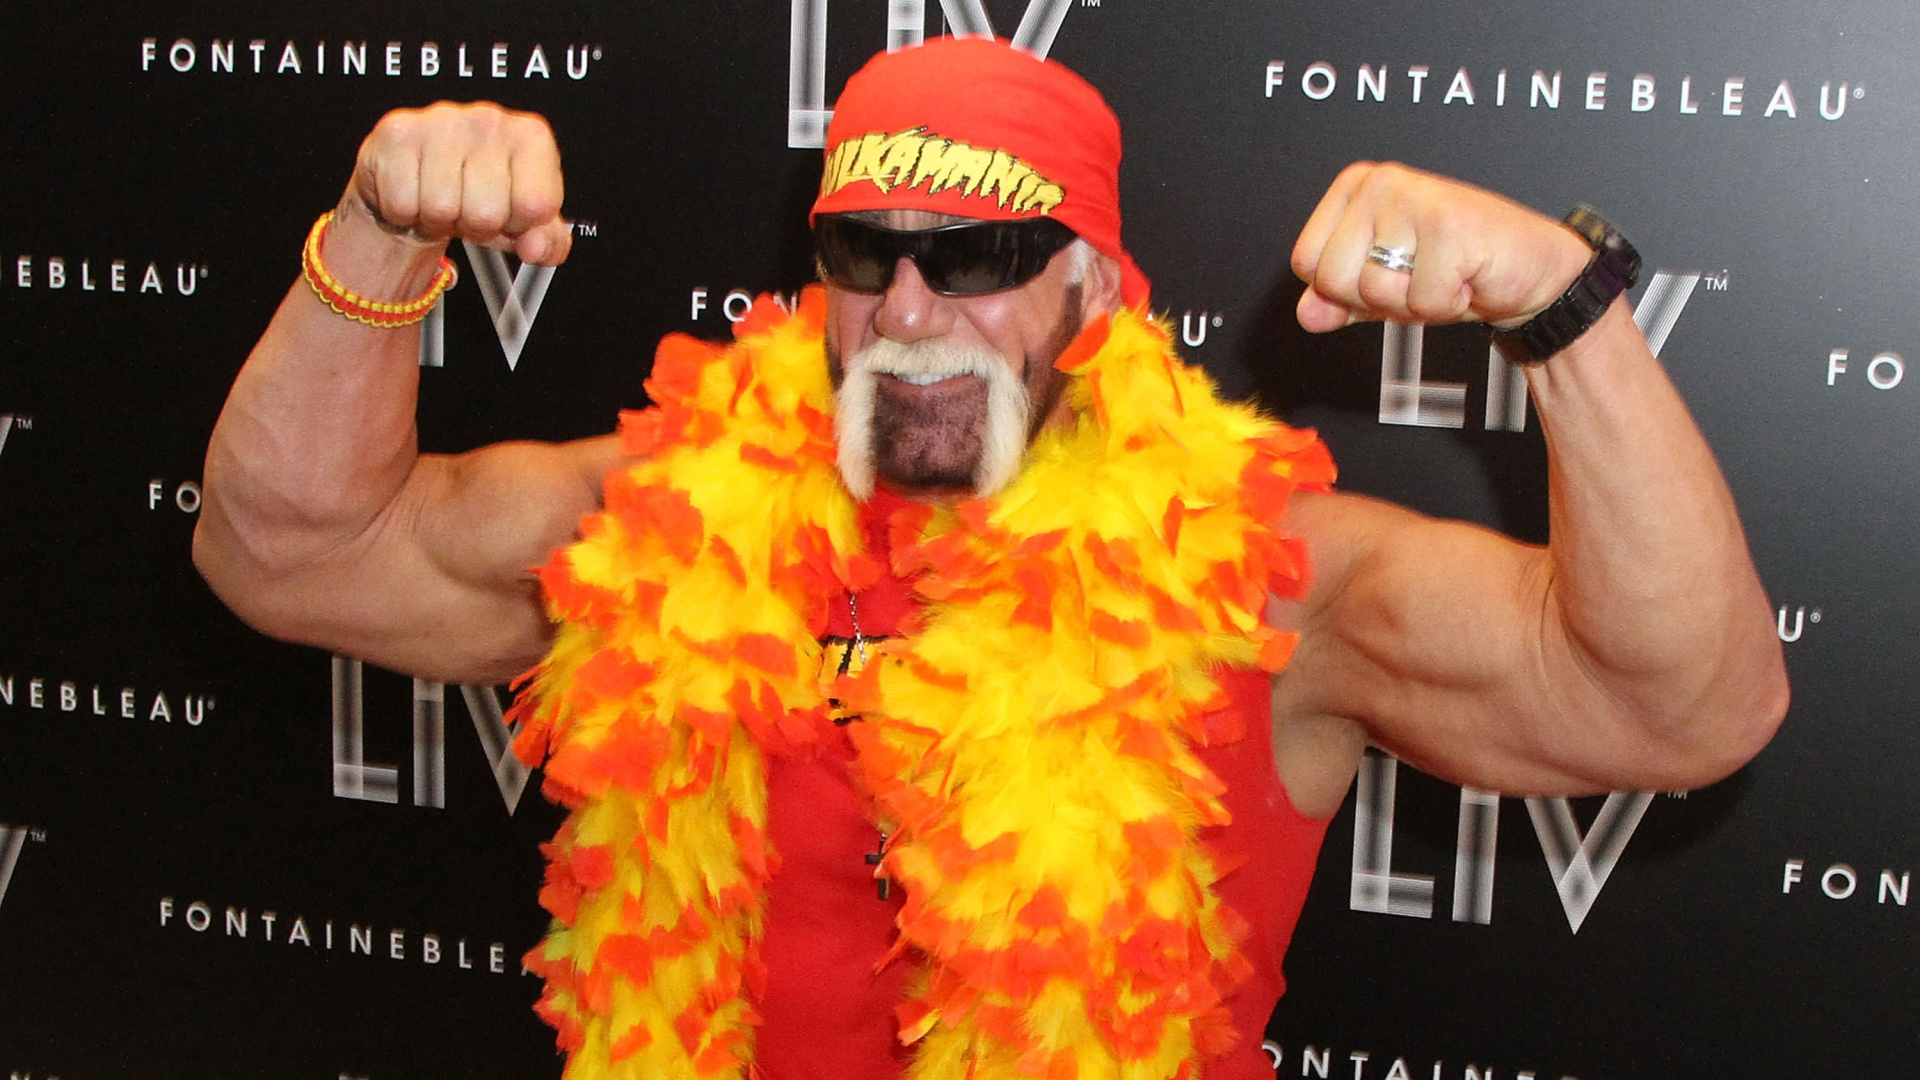 Hulk Hogan dressed as Hulk Hogan